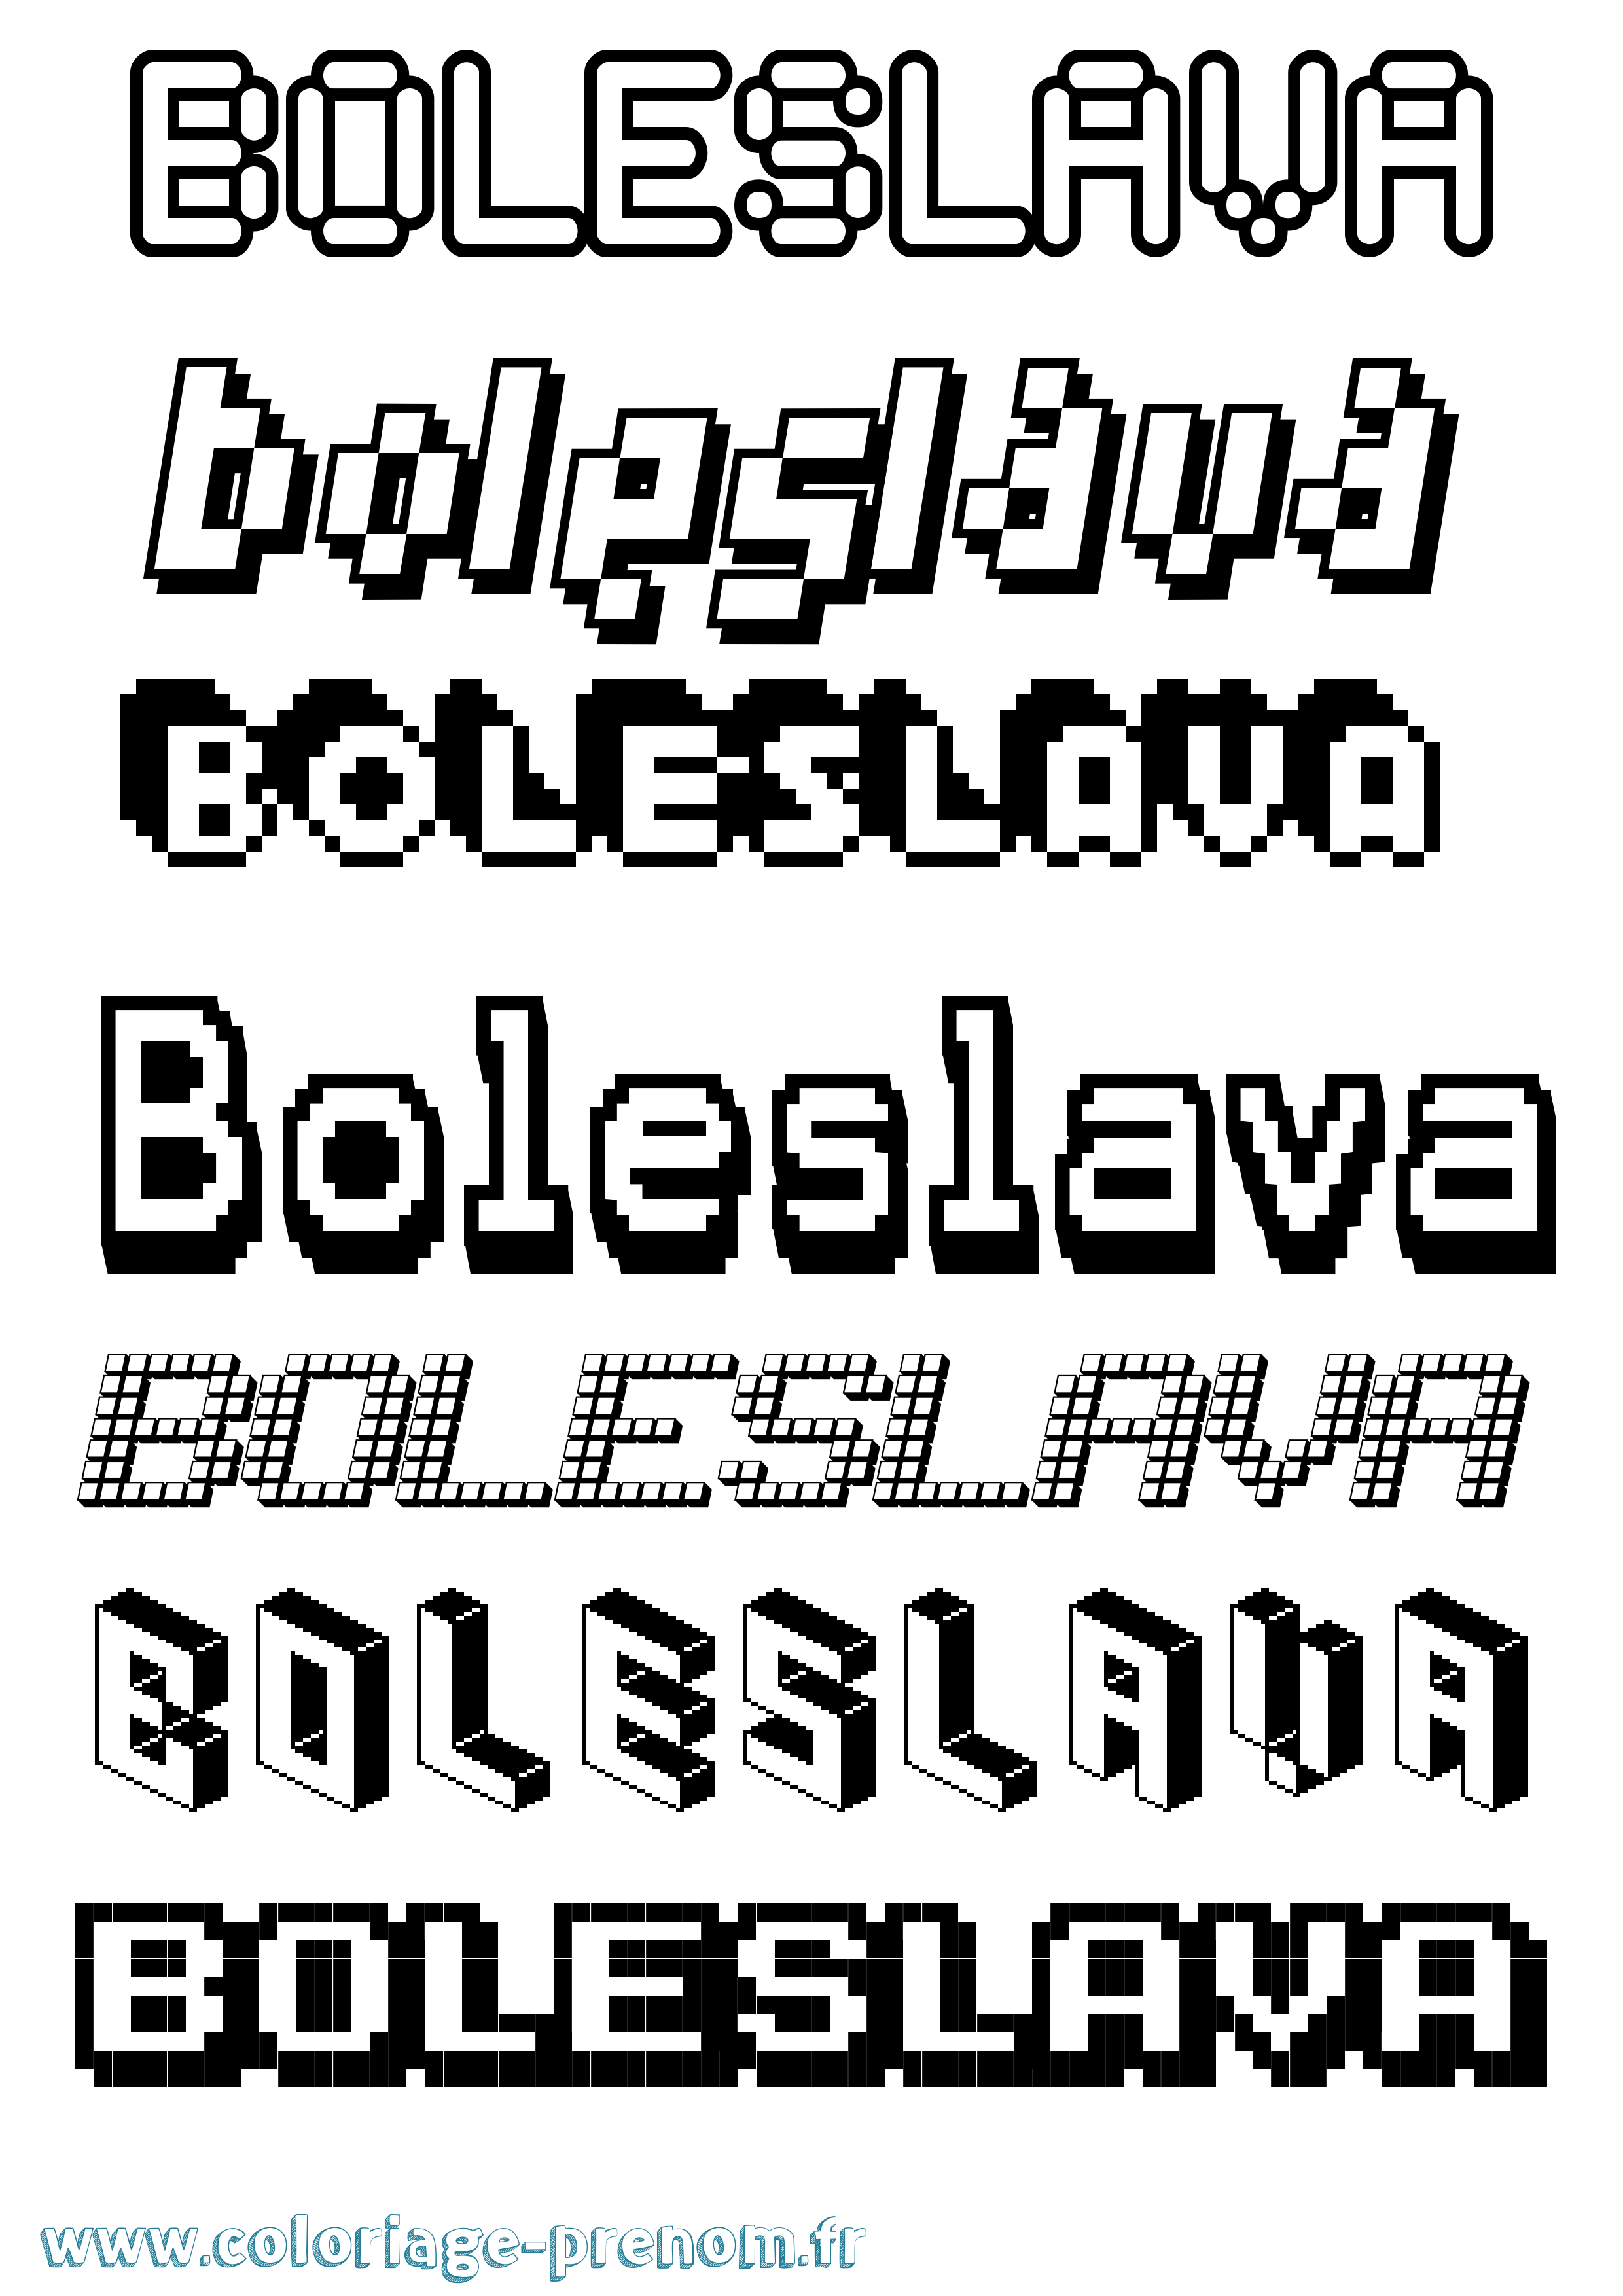 Coloriage prénom Boleslava Pixel